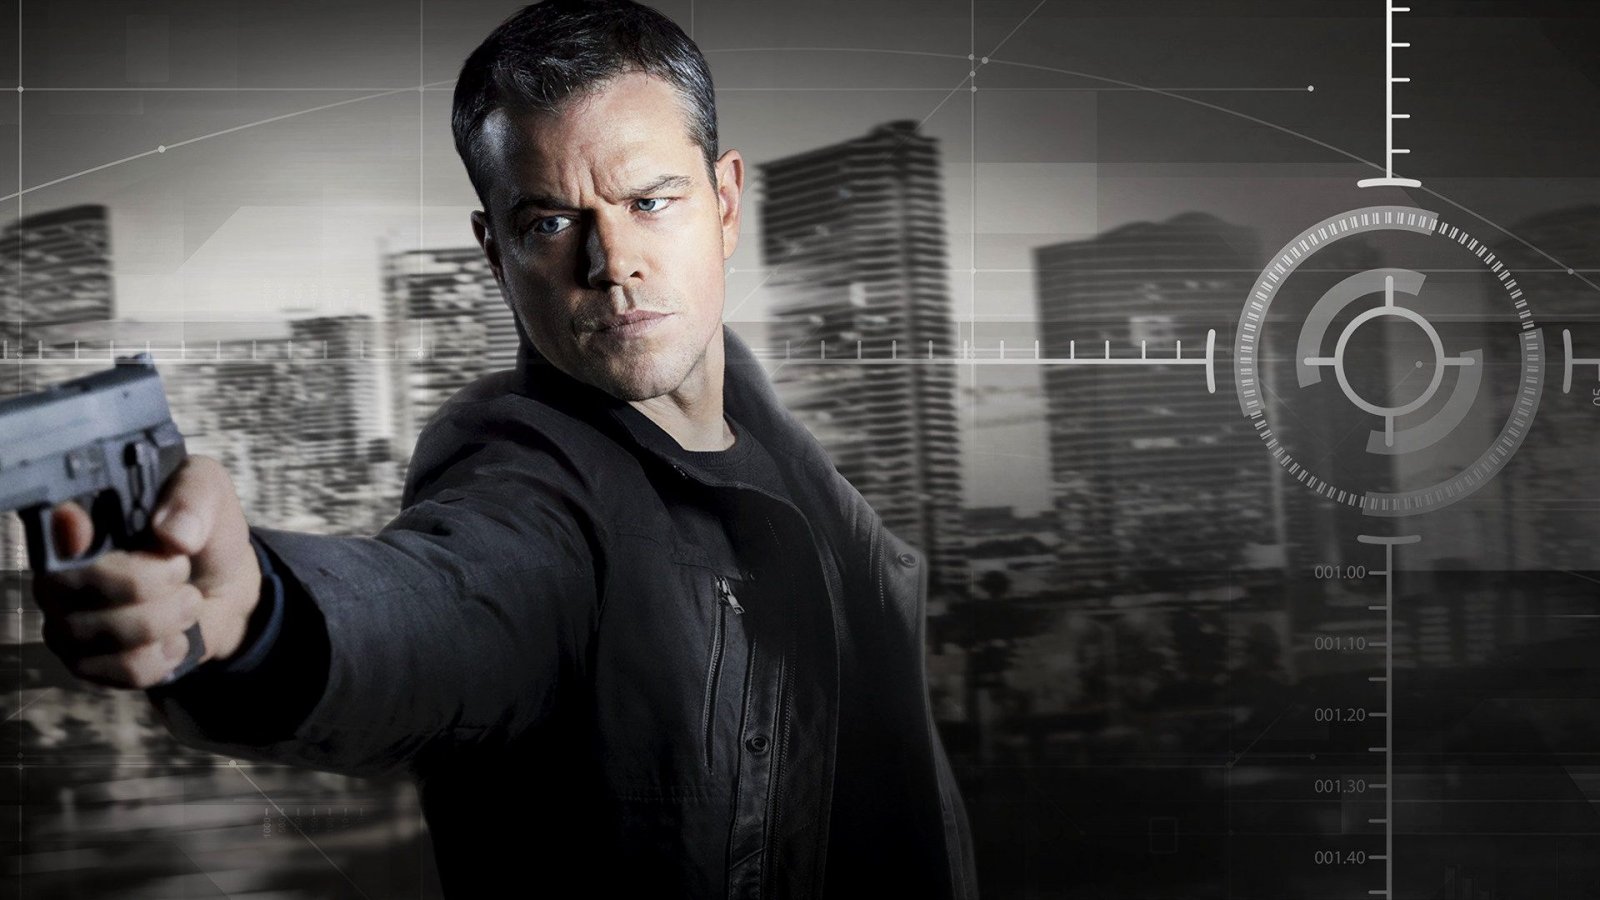 The Bourne Identity, tutta la saga su Prime Video in streaming da oggi